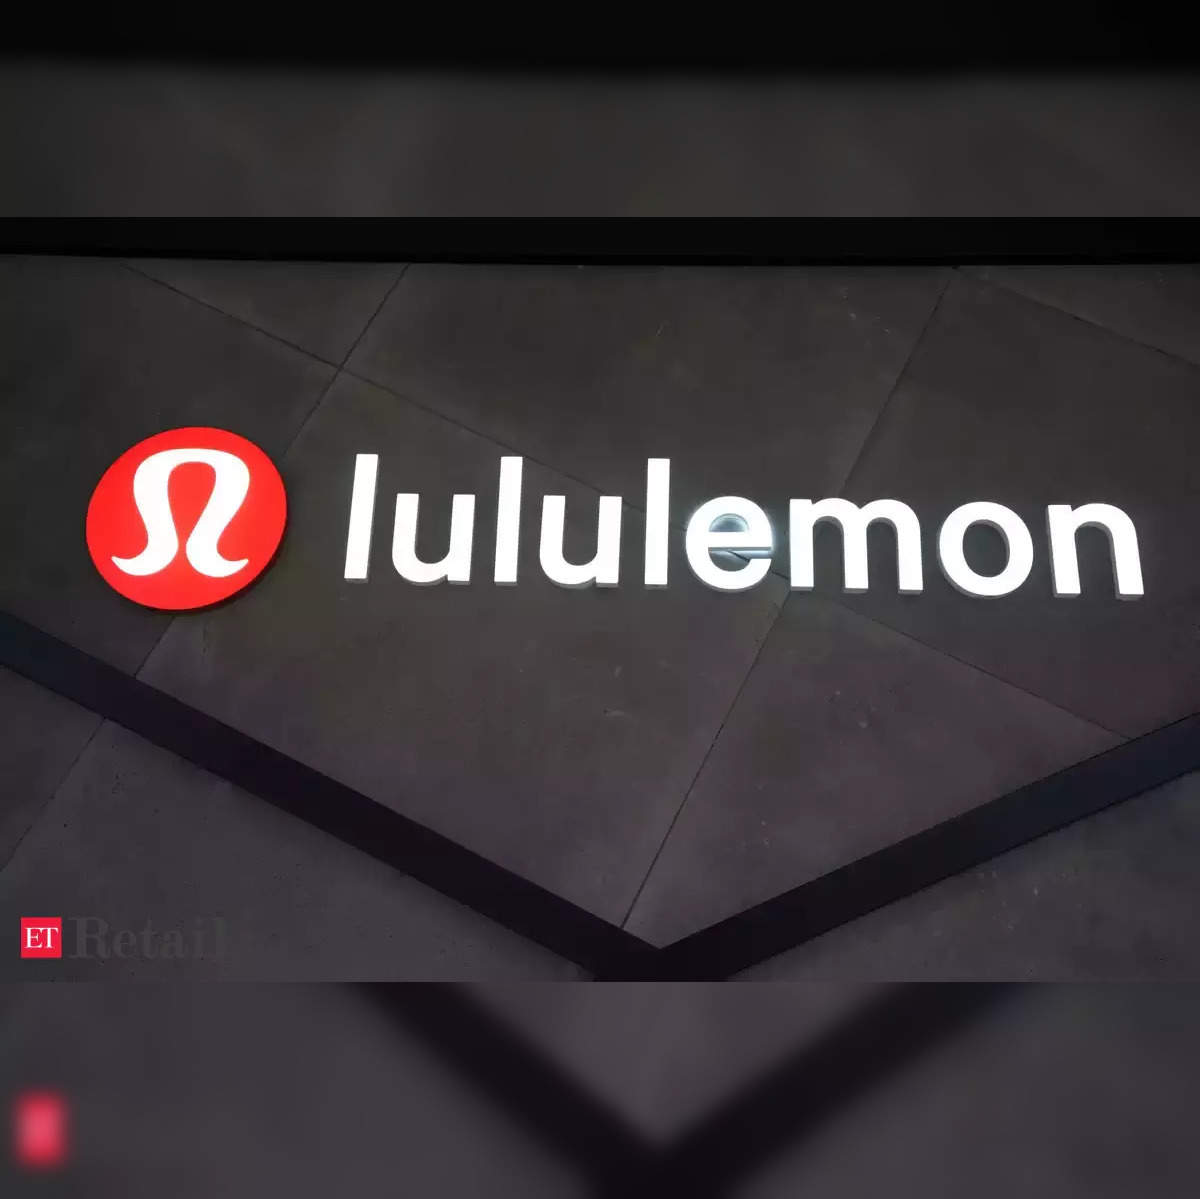 lululemon stock target: Lululemon sinks 17% as annual forecasts